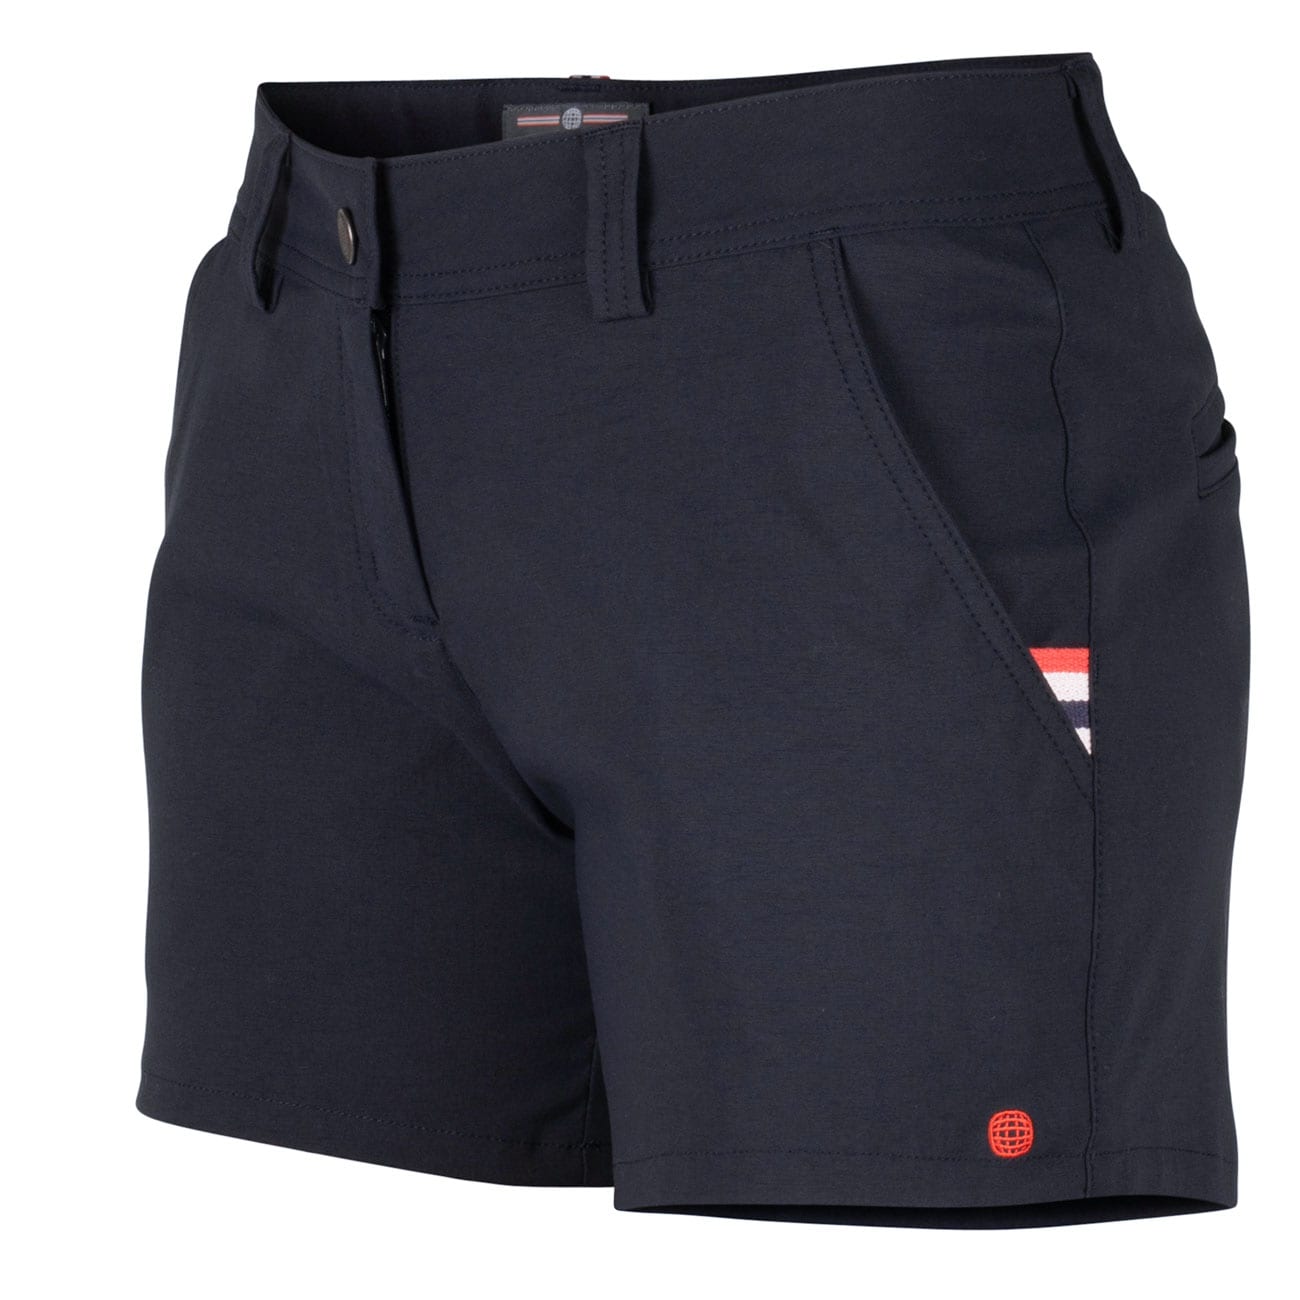 Amundsen Sports 6 incher Deck Shorts, Dame